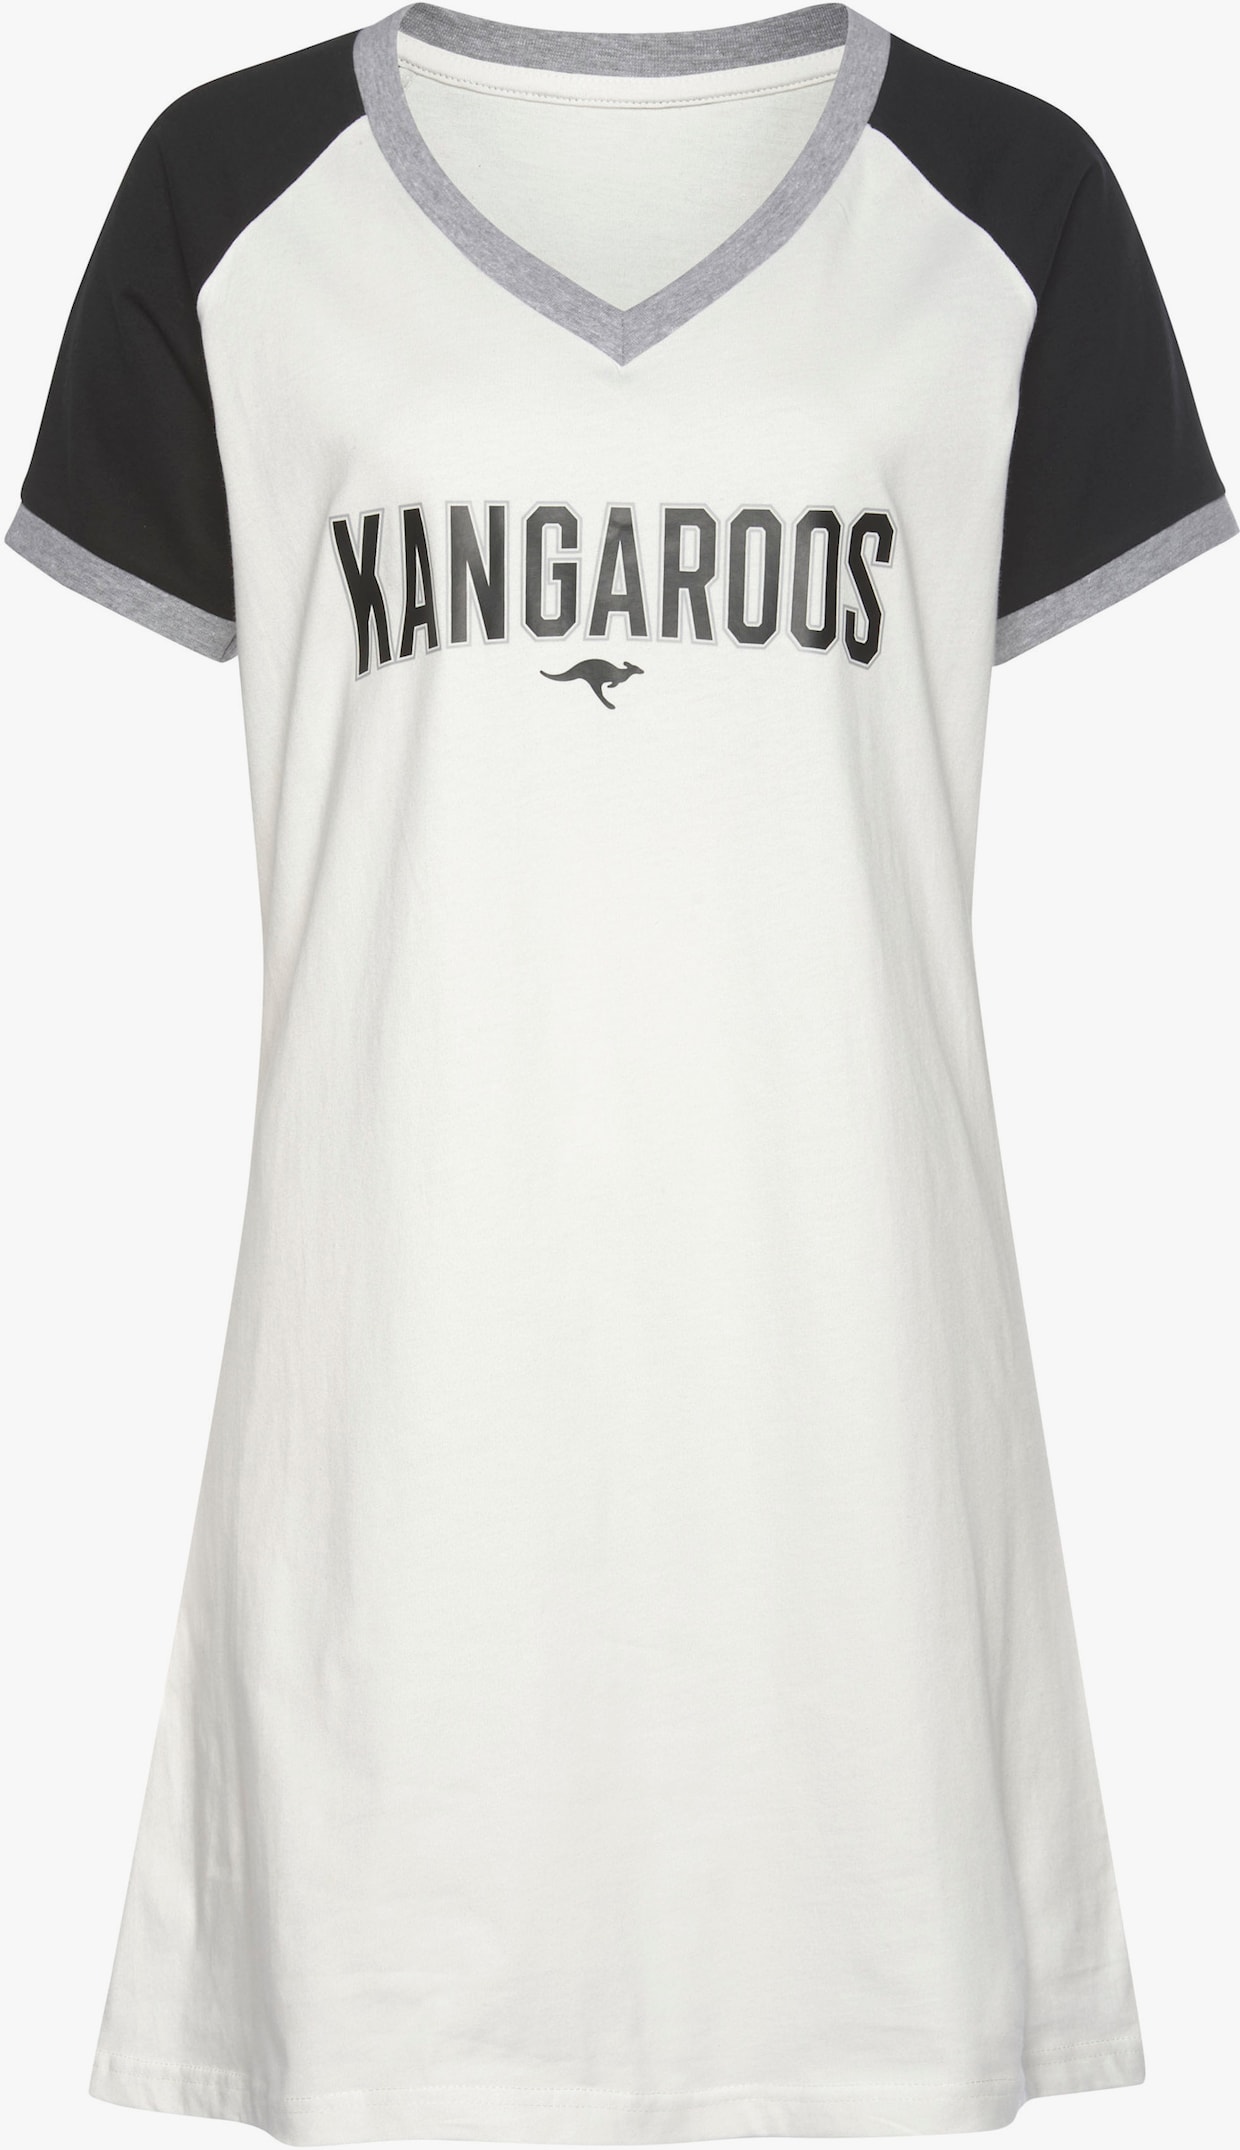 KangaROOS Bigshirt - schwarz-weiss